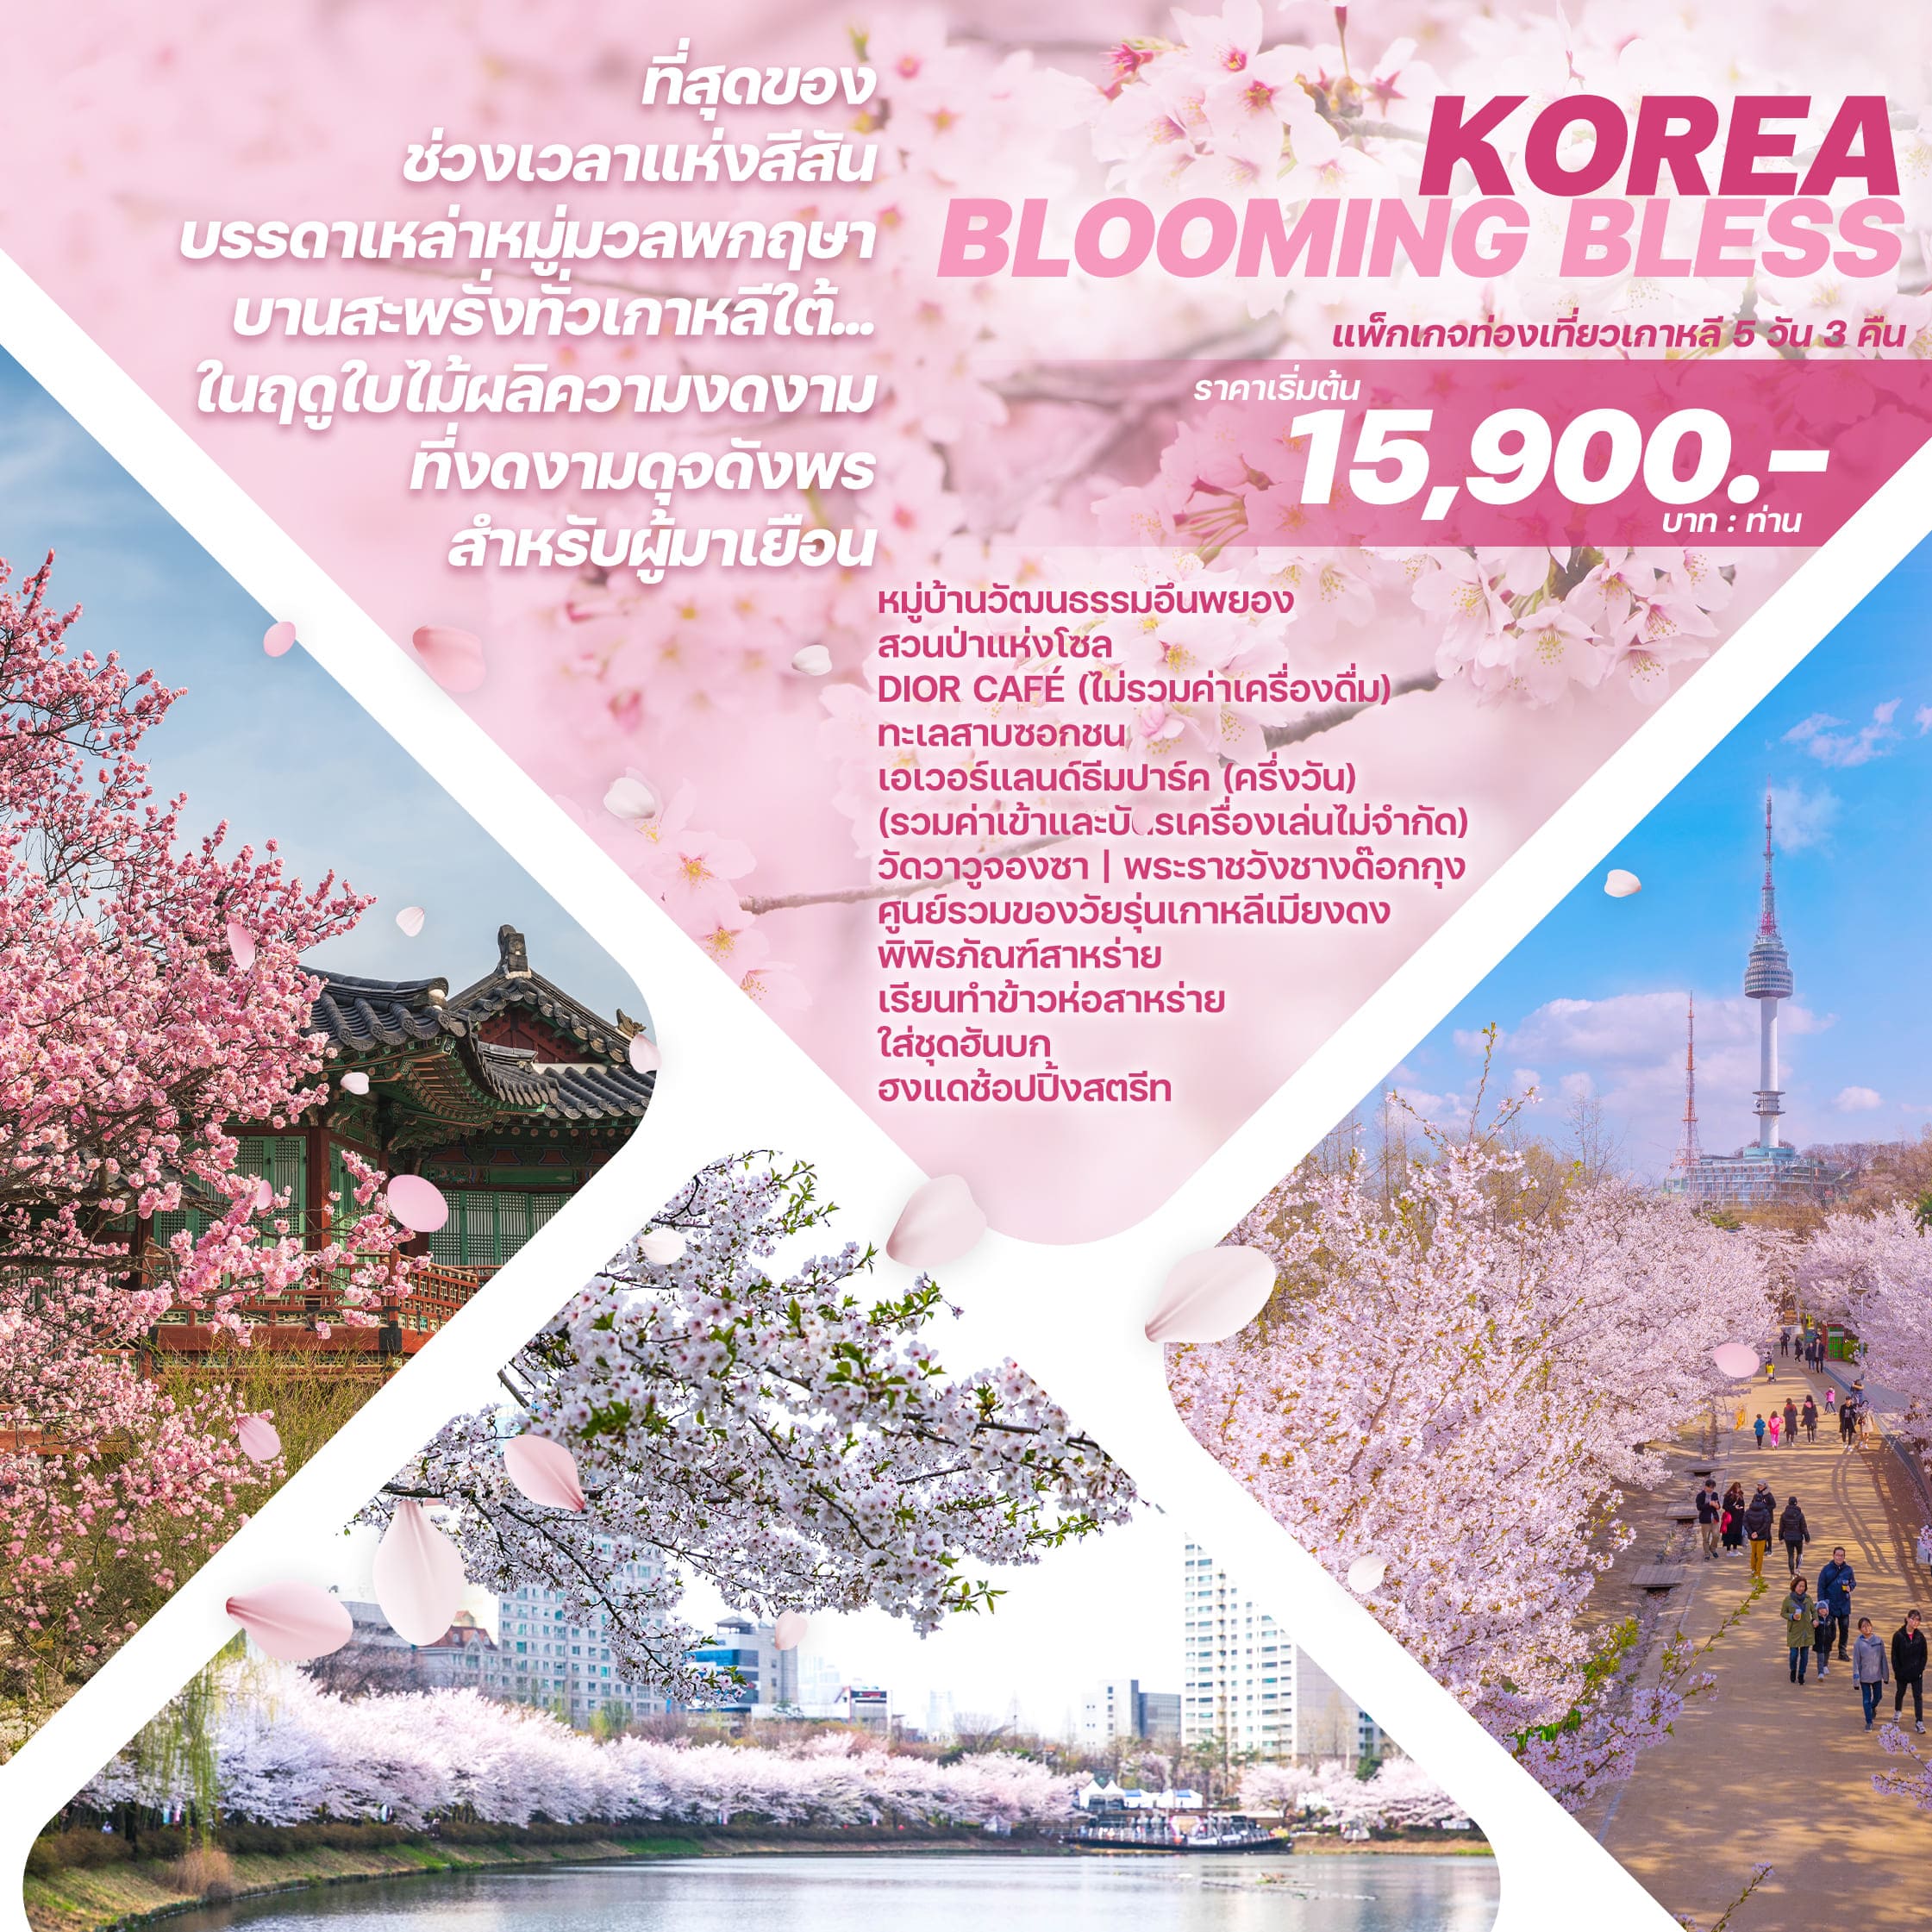 ทัวร์เกาหลี KOREA BLOOMING BLESS 5วัน 3คืน 7C